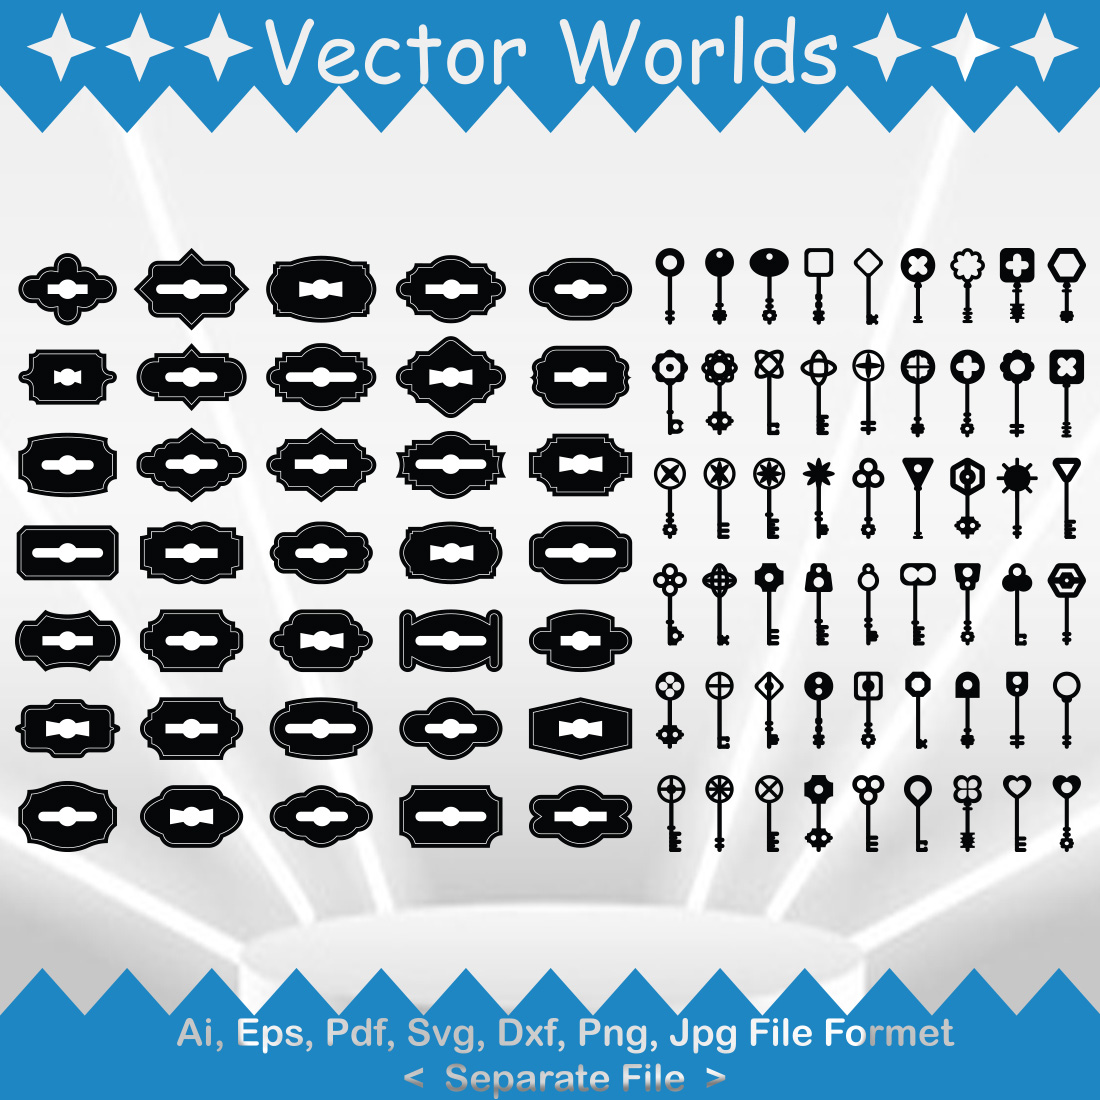 Keys And Keyholes Sets SVG Vector Design cover image.